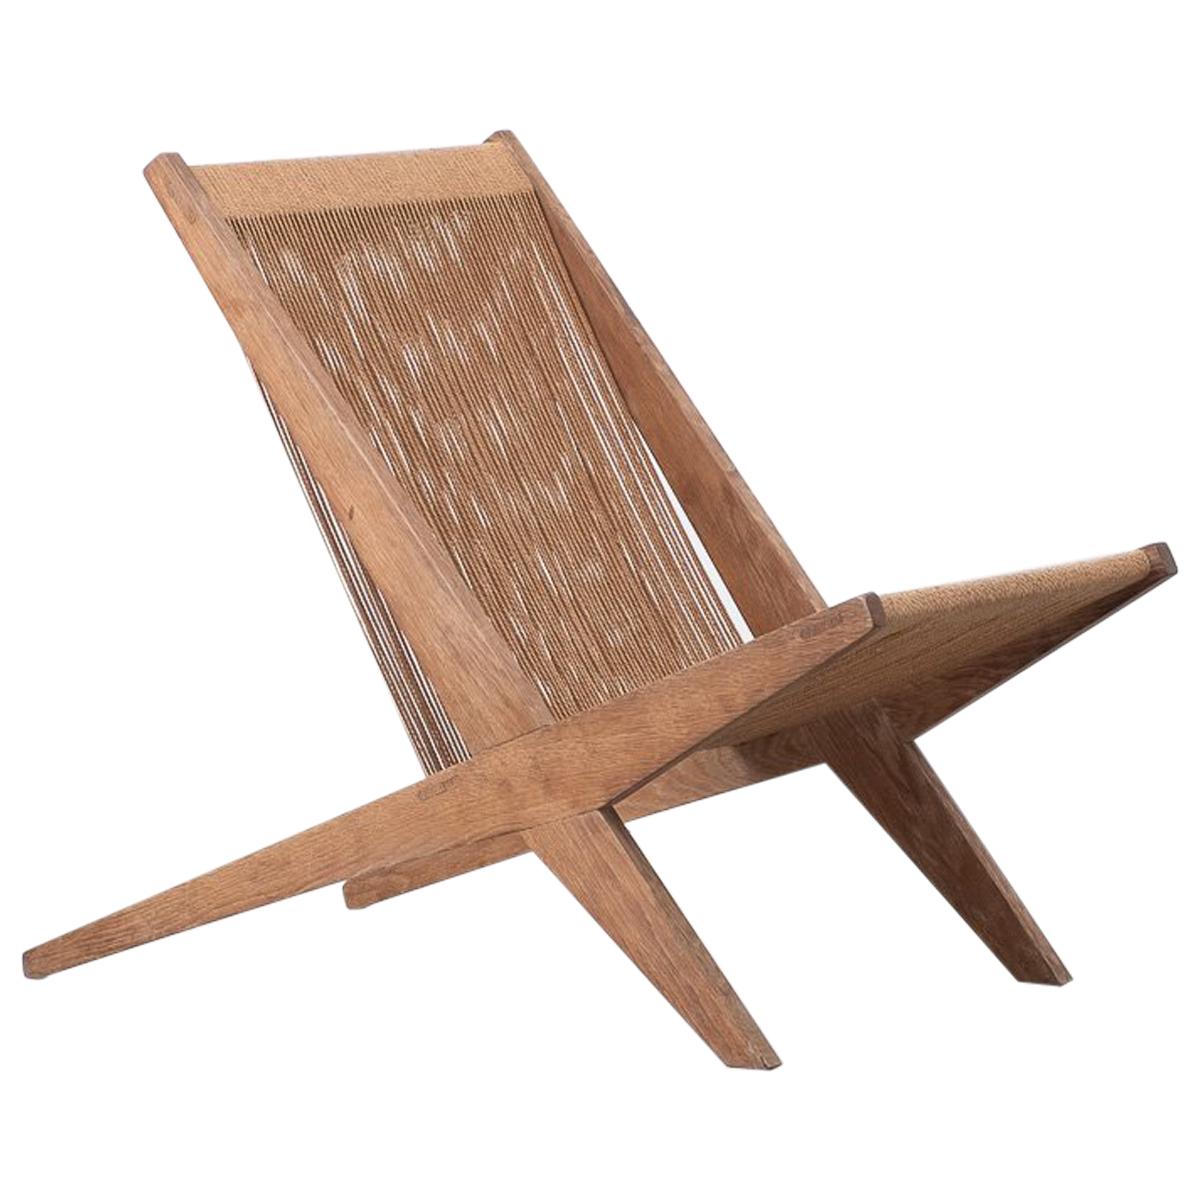 Poul Kjaerholm & Jørgen Høj Lounge Chair, Denmark, 1950s